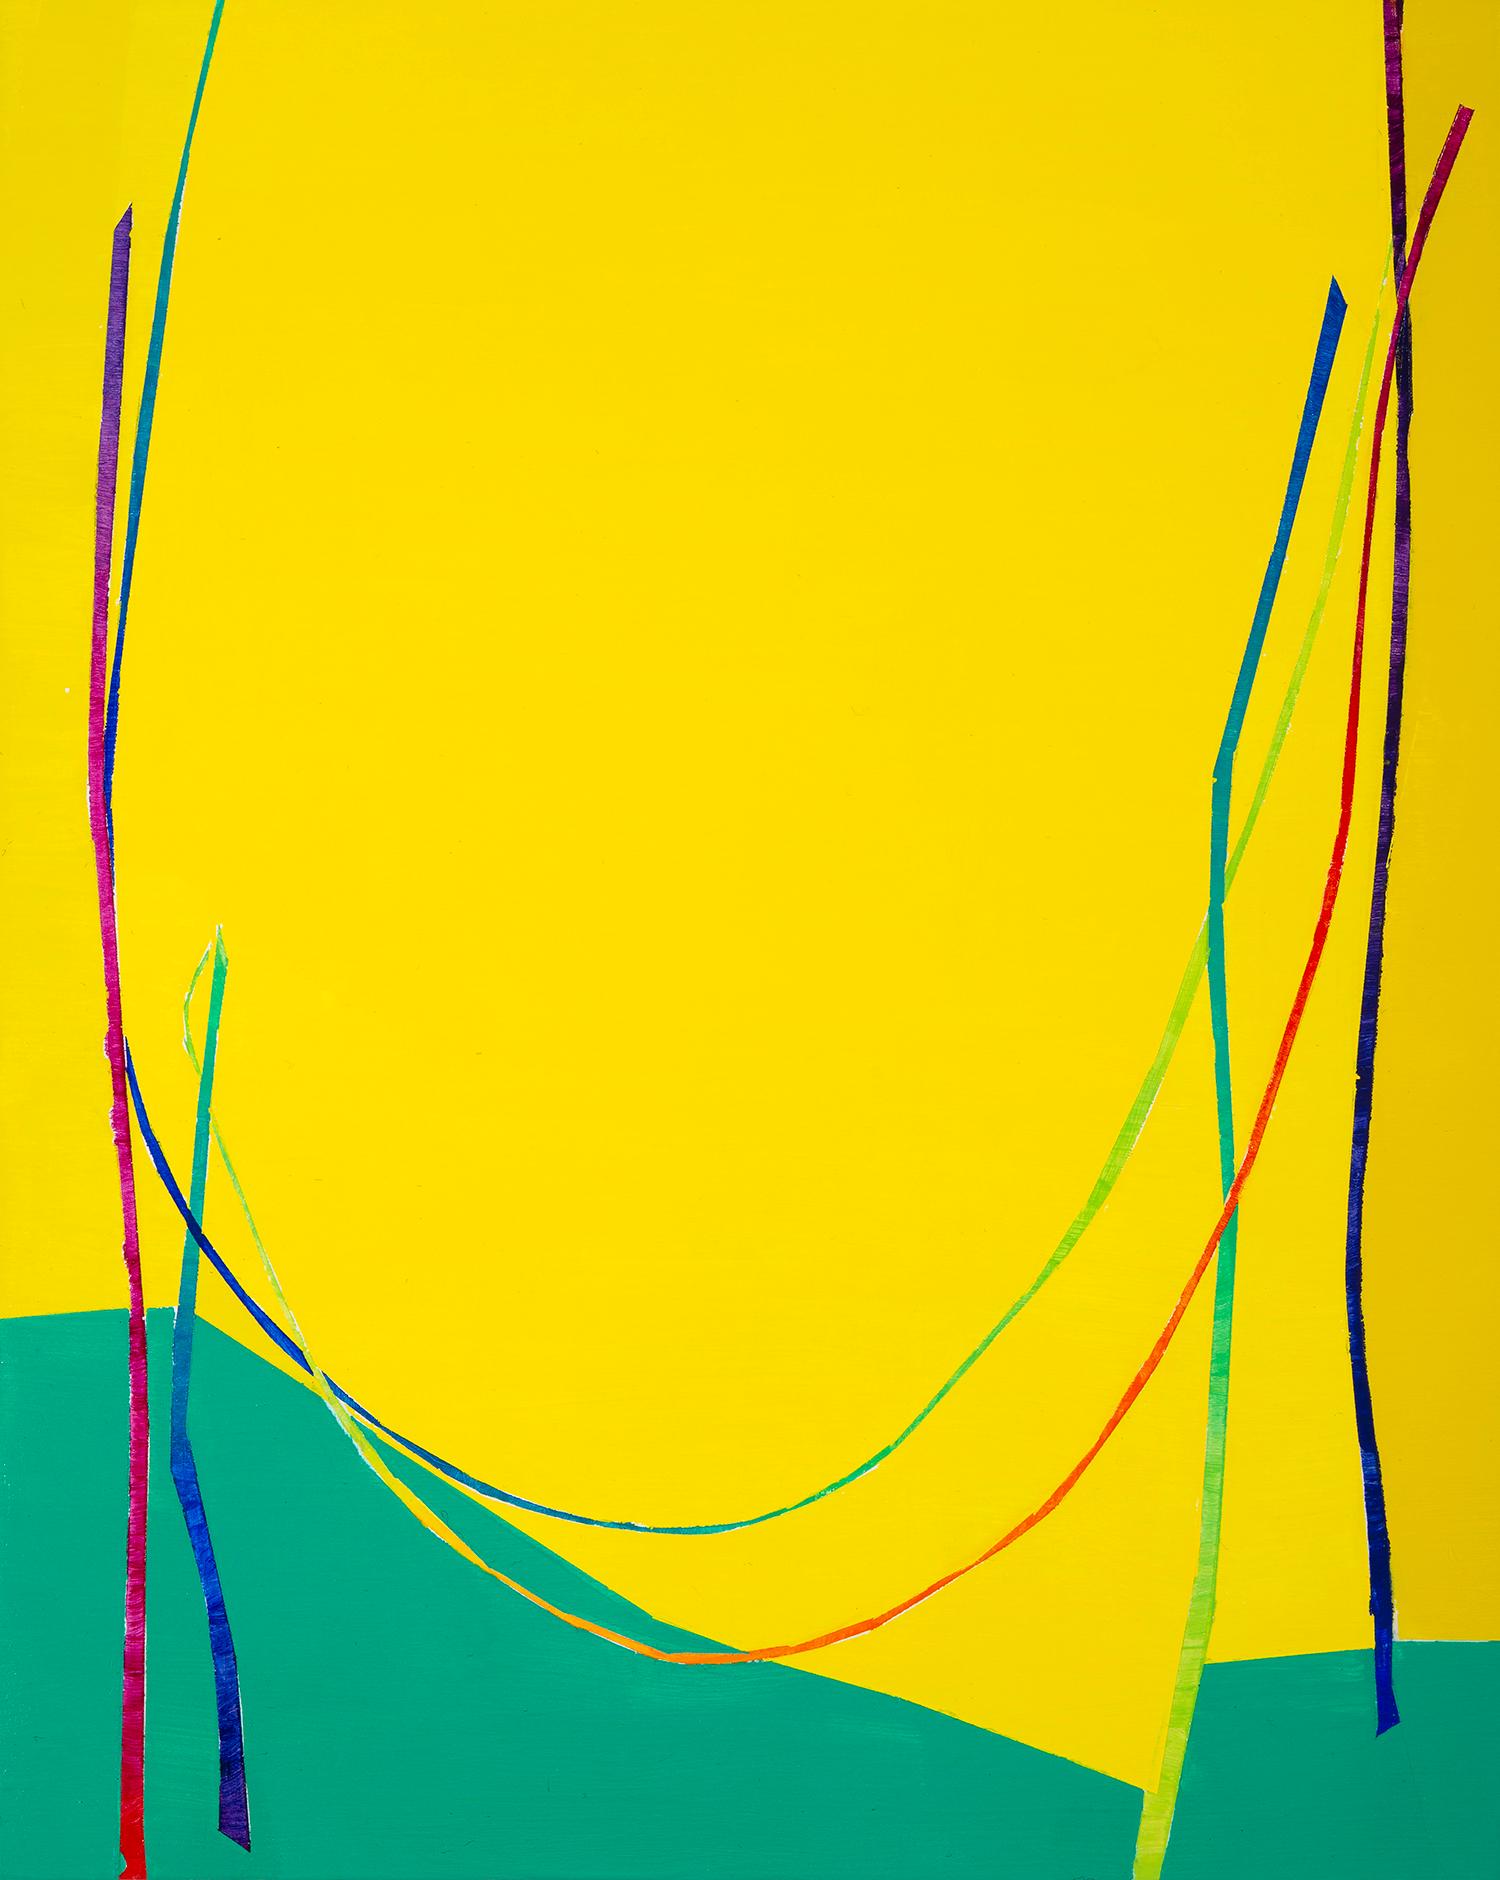 Paula Cahill Abstract Painting – Double Catenary: Tafelbild mit mehrfarbigen Bogenlinien auf Gelb und Grün